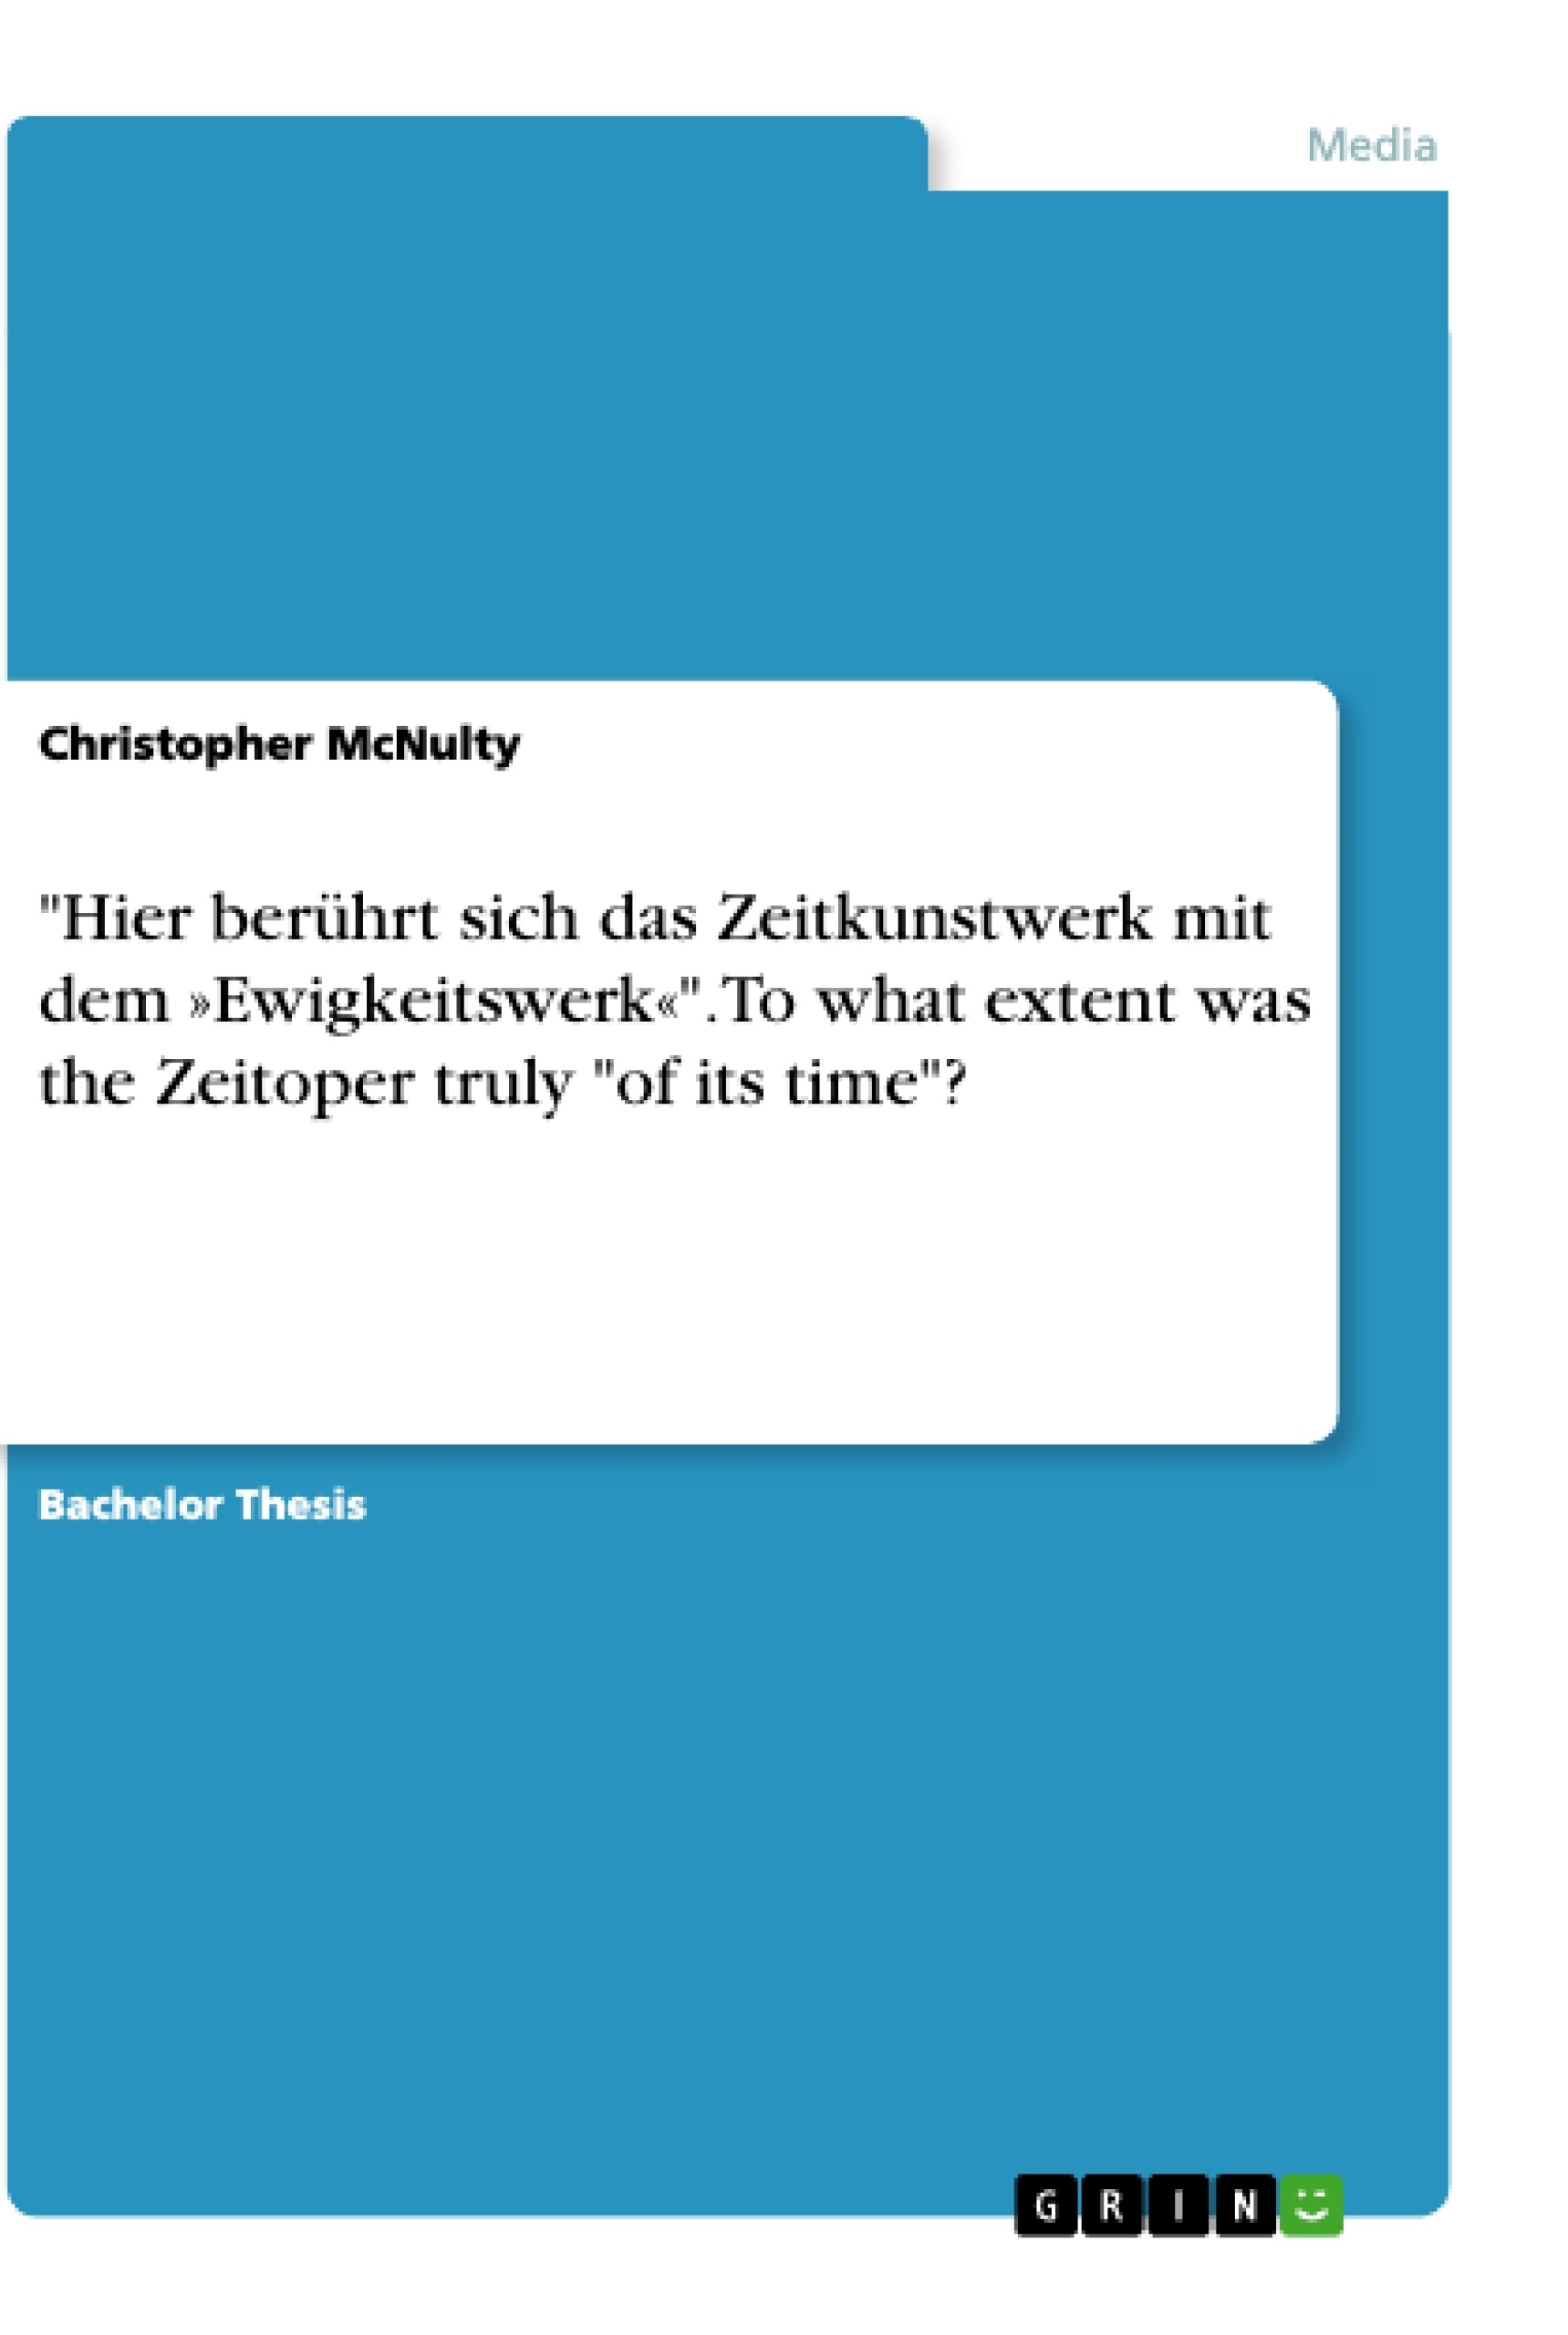 Título: "Hier berührt sich das Zeitkunstwerk mit dem »Ewigkeitswerk«". To what extent was the Zeitoper truly "of its time"?